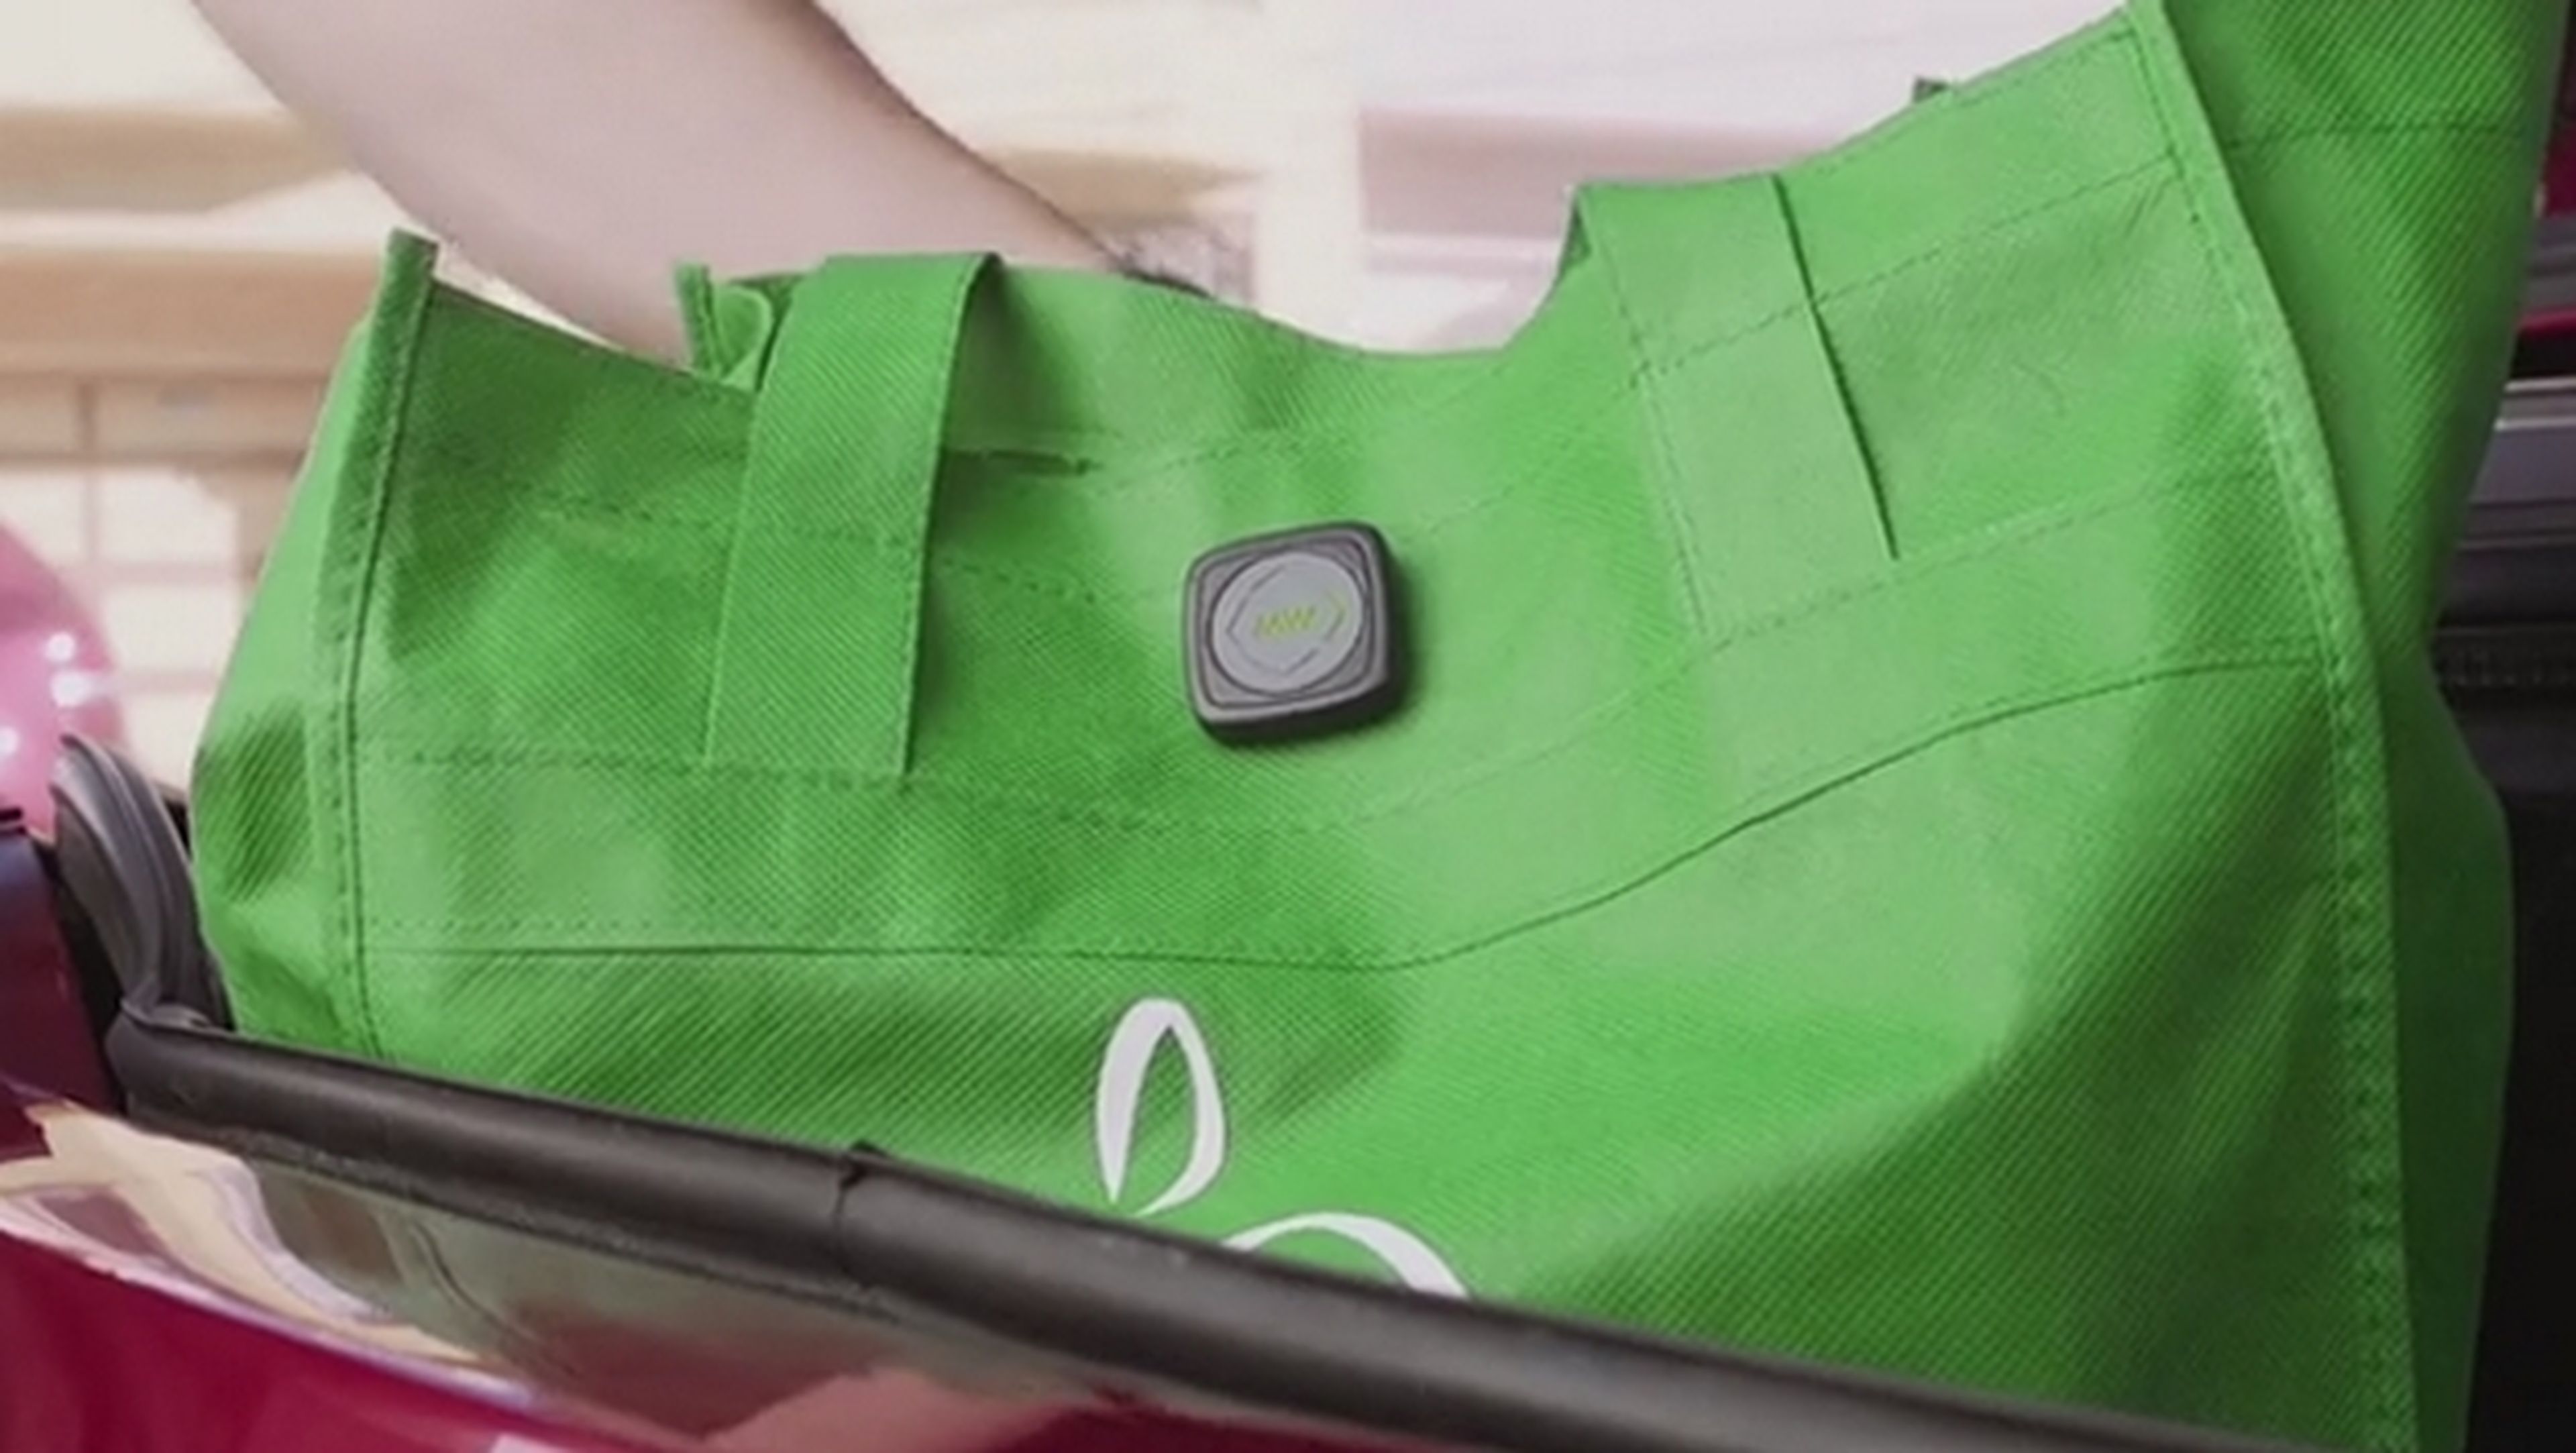 Este botón convierte cualquier objeto en un wearable con sensores